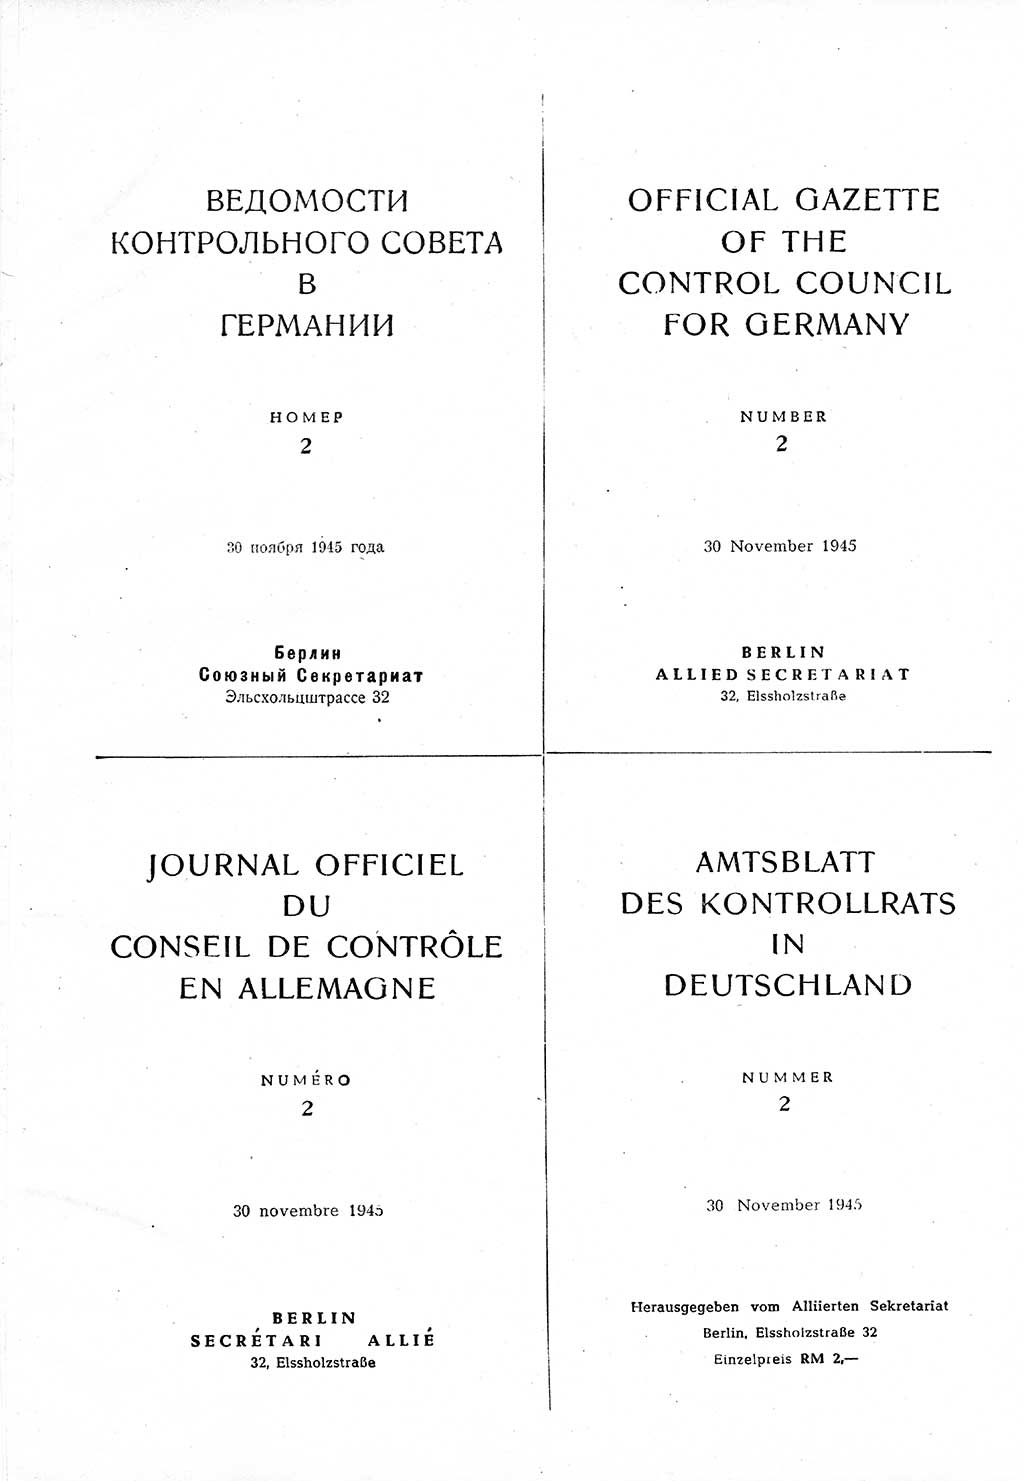 Amtsblatt des Kontrollrats (ABlKR) in Deutschland 1945, Seite 24 (ABlKR Dtl. 1945, S. 24)